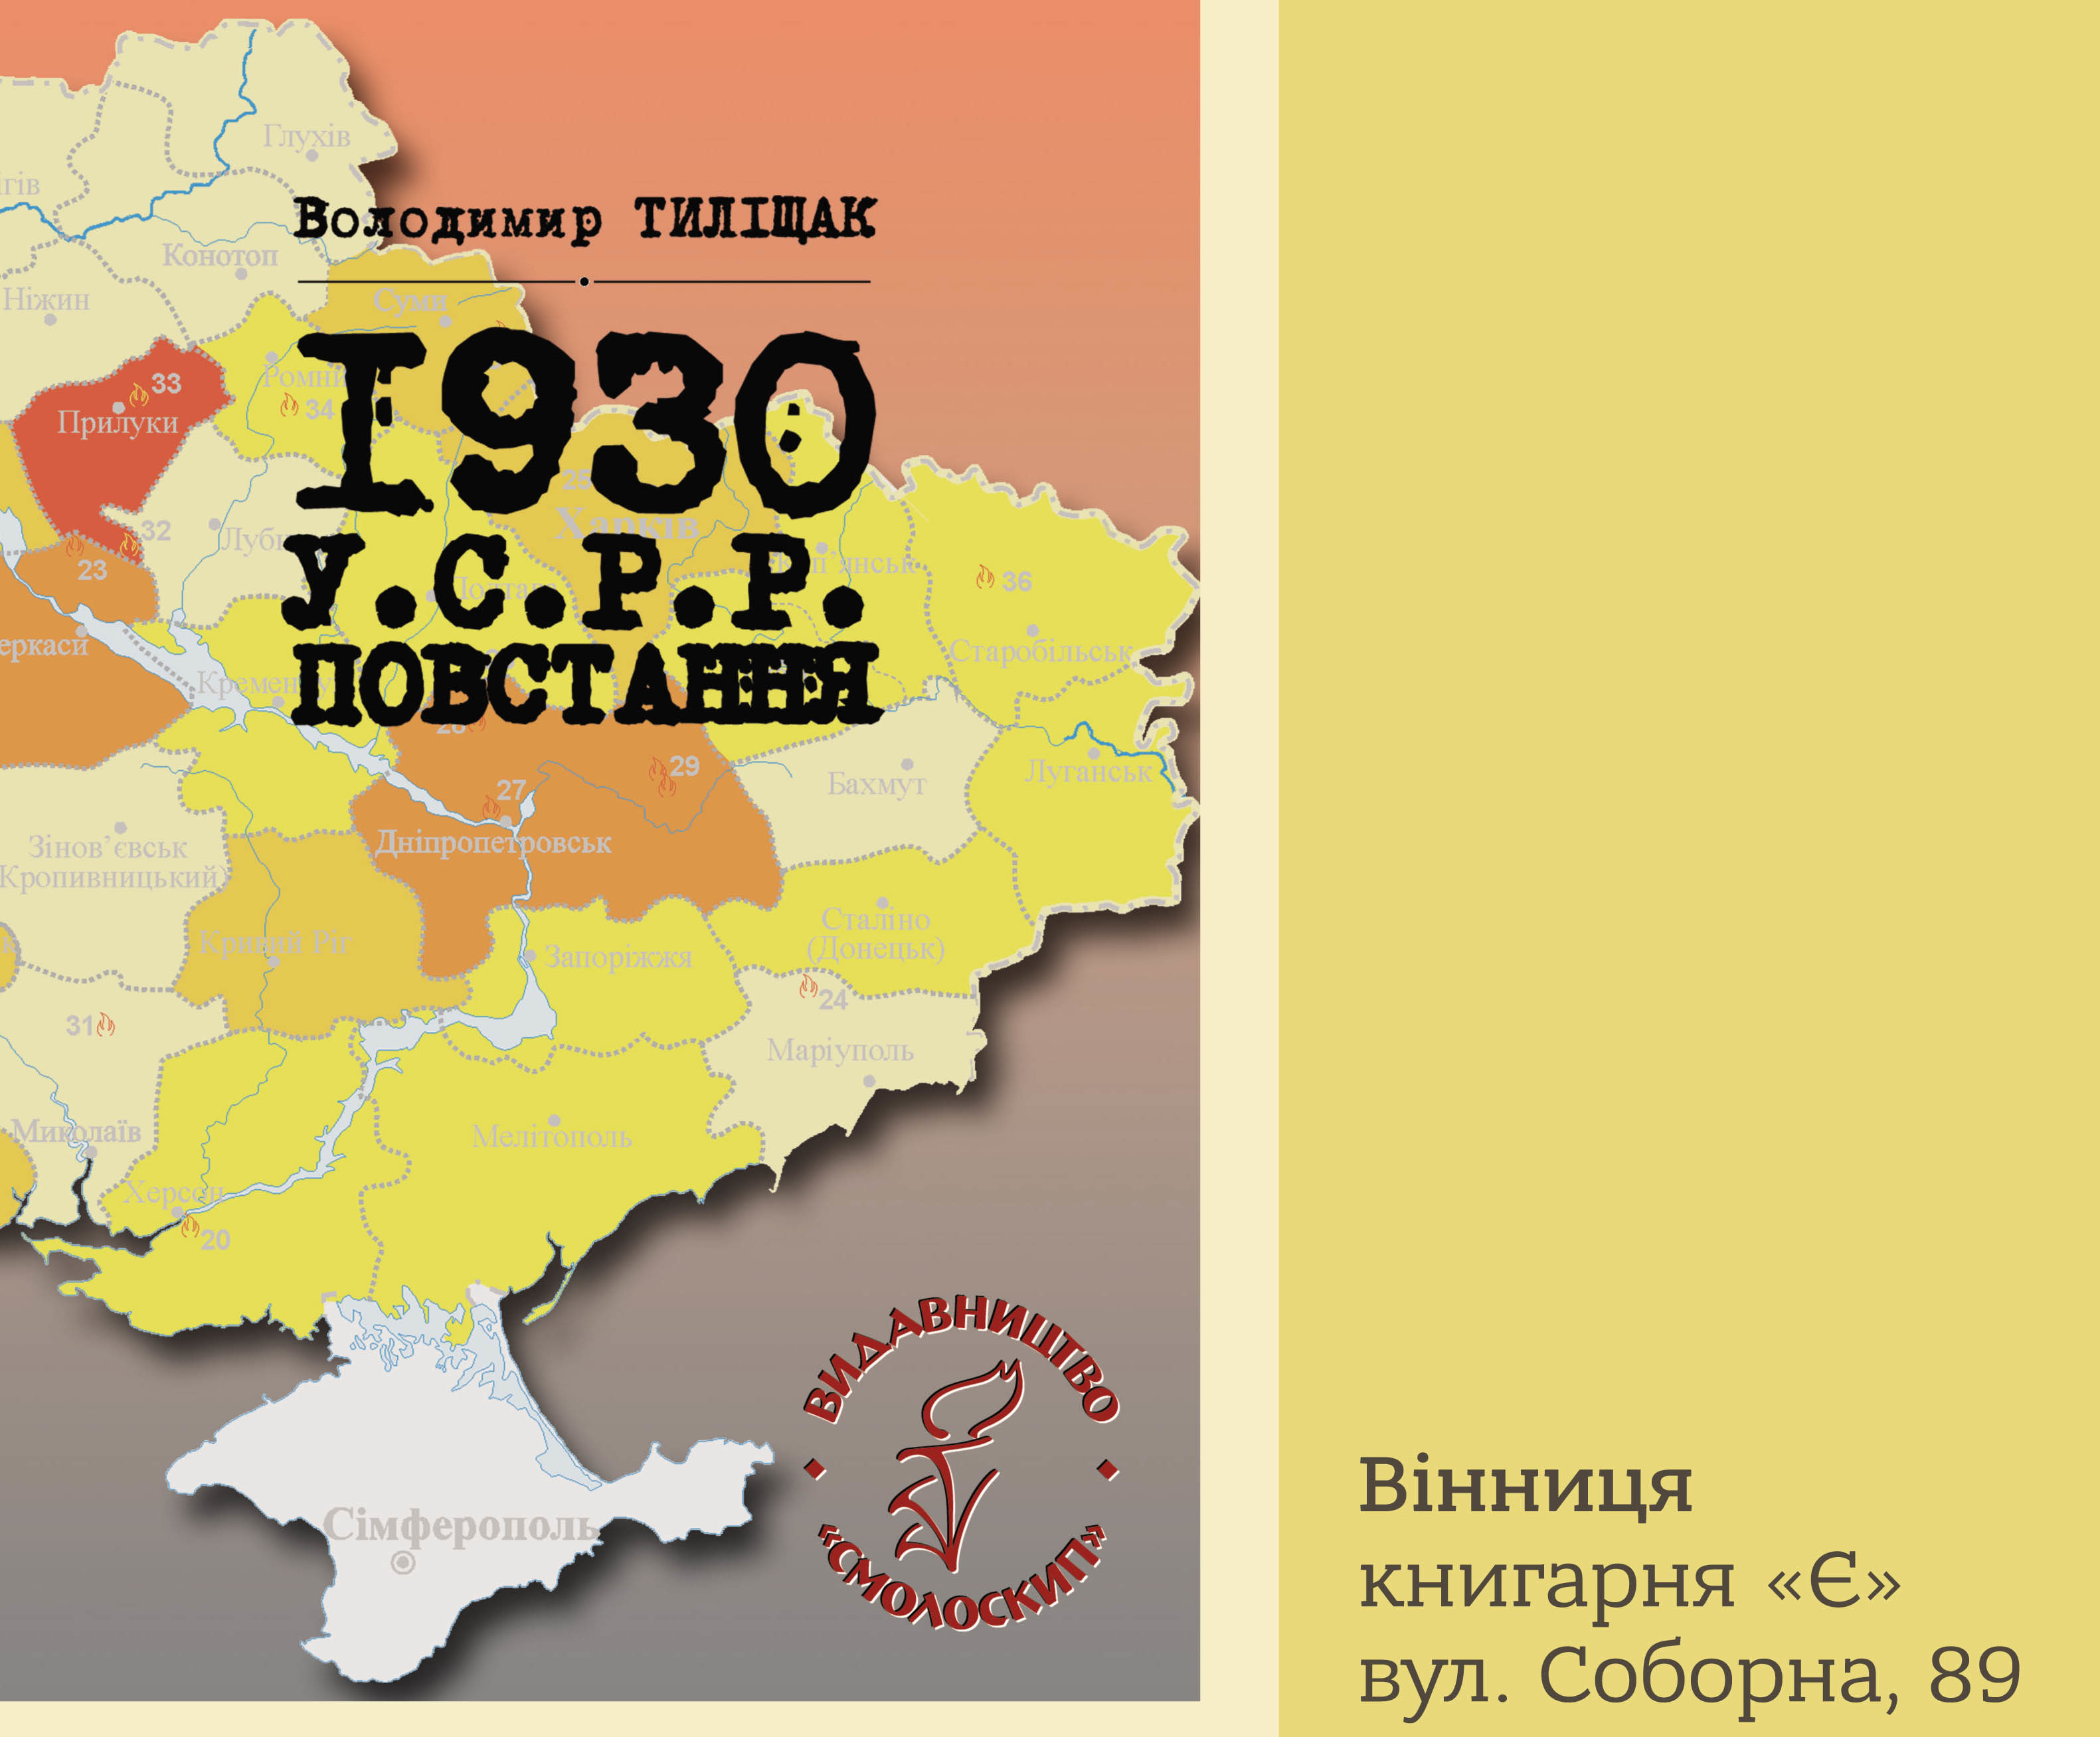 У.С.Р.Р. Повстання: у Вінниці розкажуть про маловідомі сторінки історії України